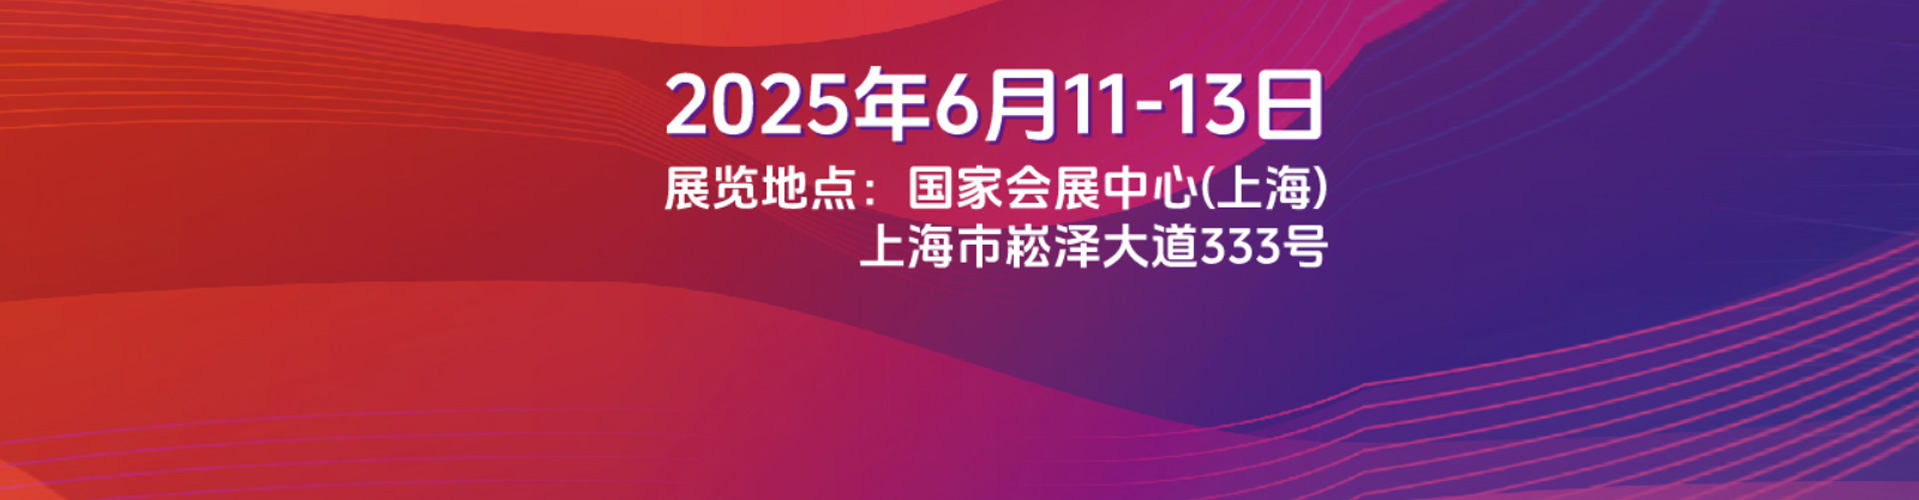 2022年SNEC光伏展及光伏论坛大会-参展申请表-*十六届上海SNEC光伏展览会